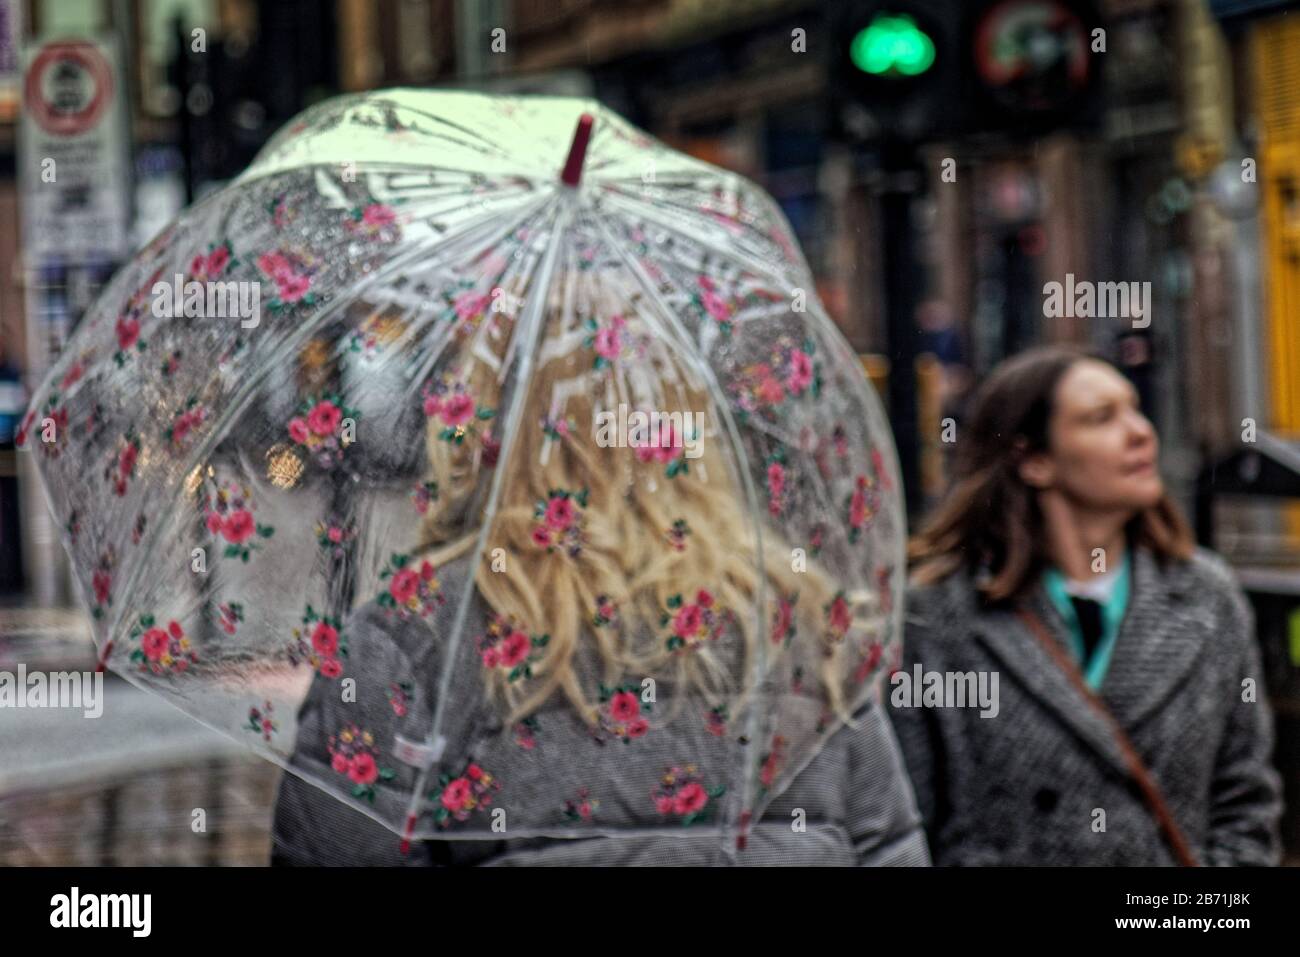 Glasgow, Scotland, UK, 12th March, 2020: UK Weather: Piovere nel centro della città ha portato fuori ombrelloni e maschere facciali. Copywrite Gerard Ferry/ Alamy Live News Foto Stock